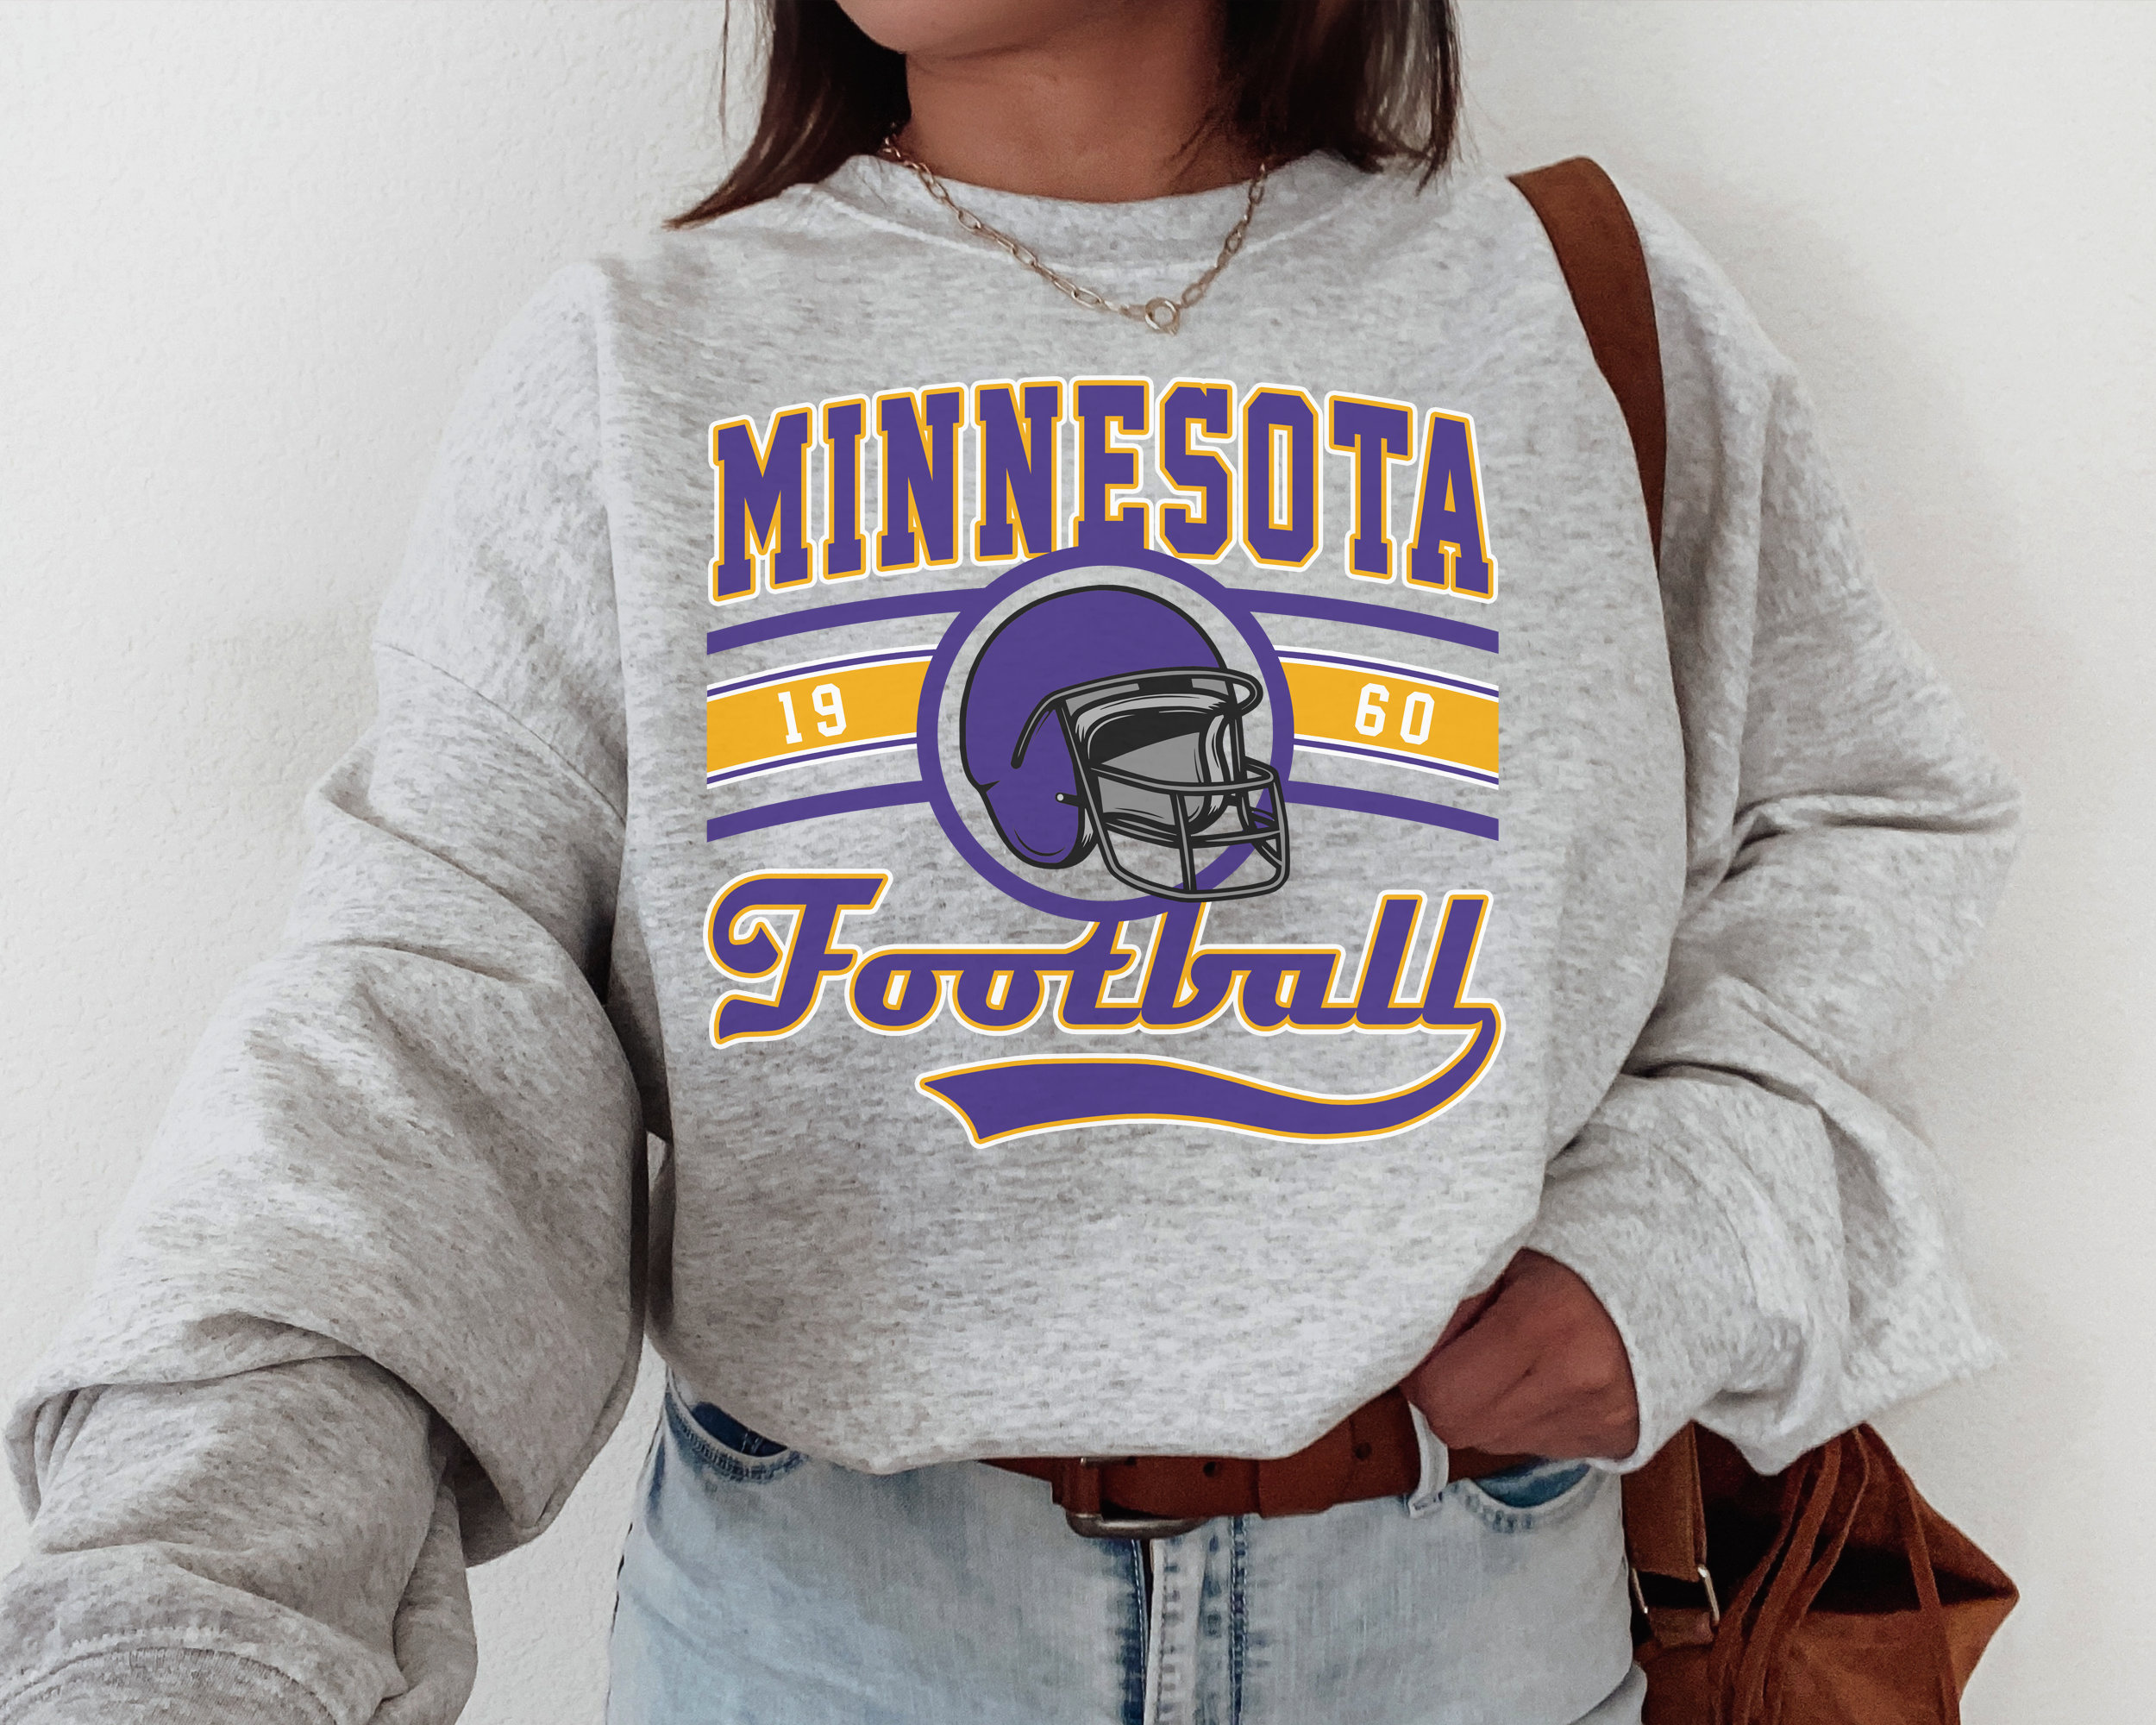 Minnesota Football Sweatshirt the Vikes Sweatshirt Vintage